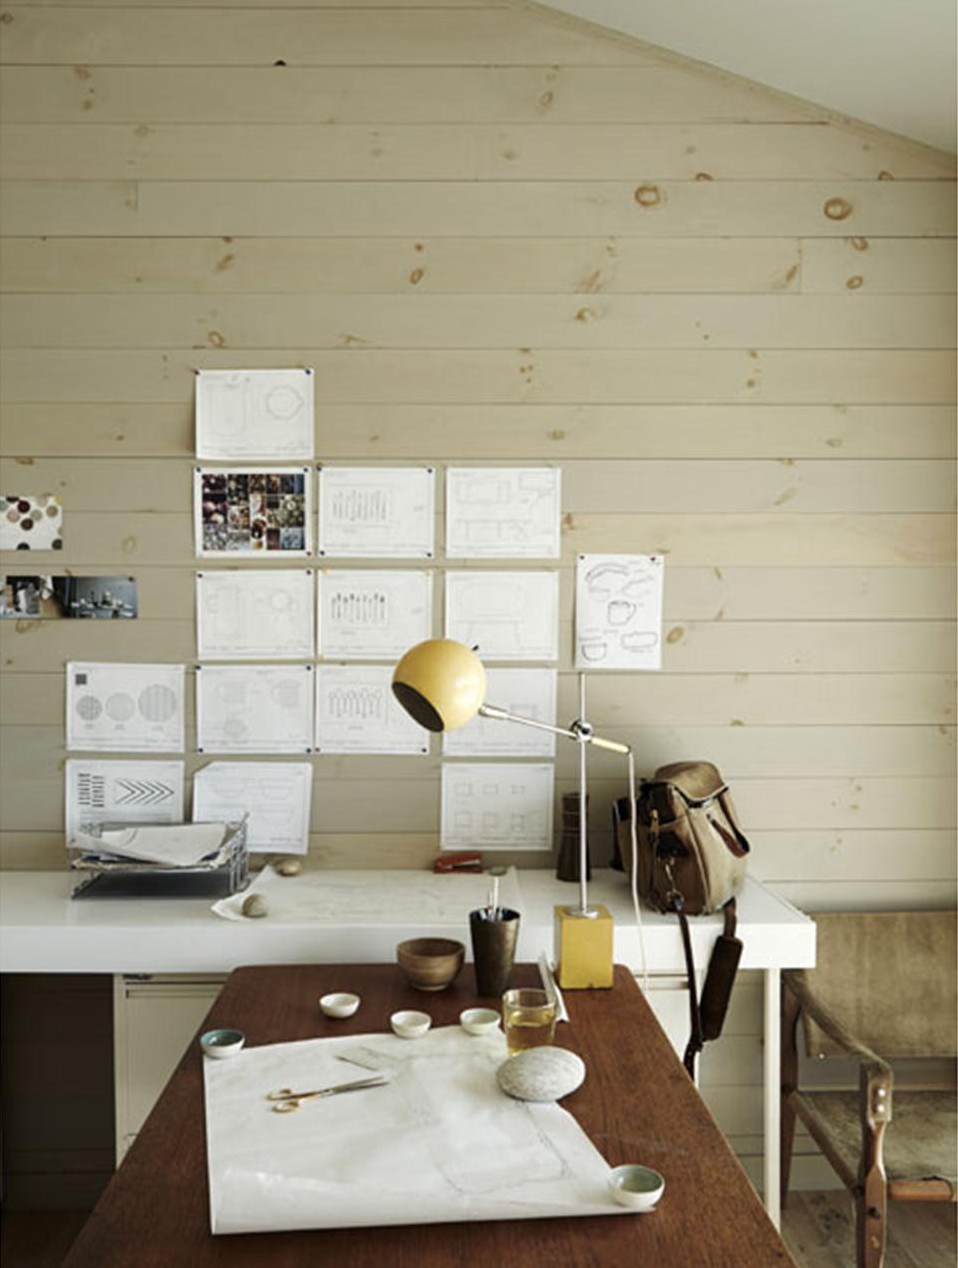 Домашний офис пары дизайнеров. Эскизы можно вешать прямо на деревянную стену. Внимание привлекает желтая настольная лампа в стиле середины 20-го века.